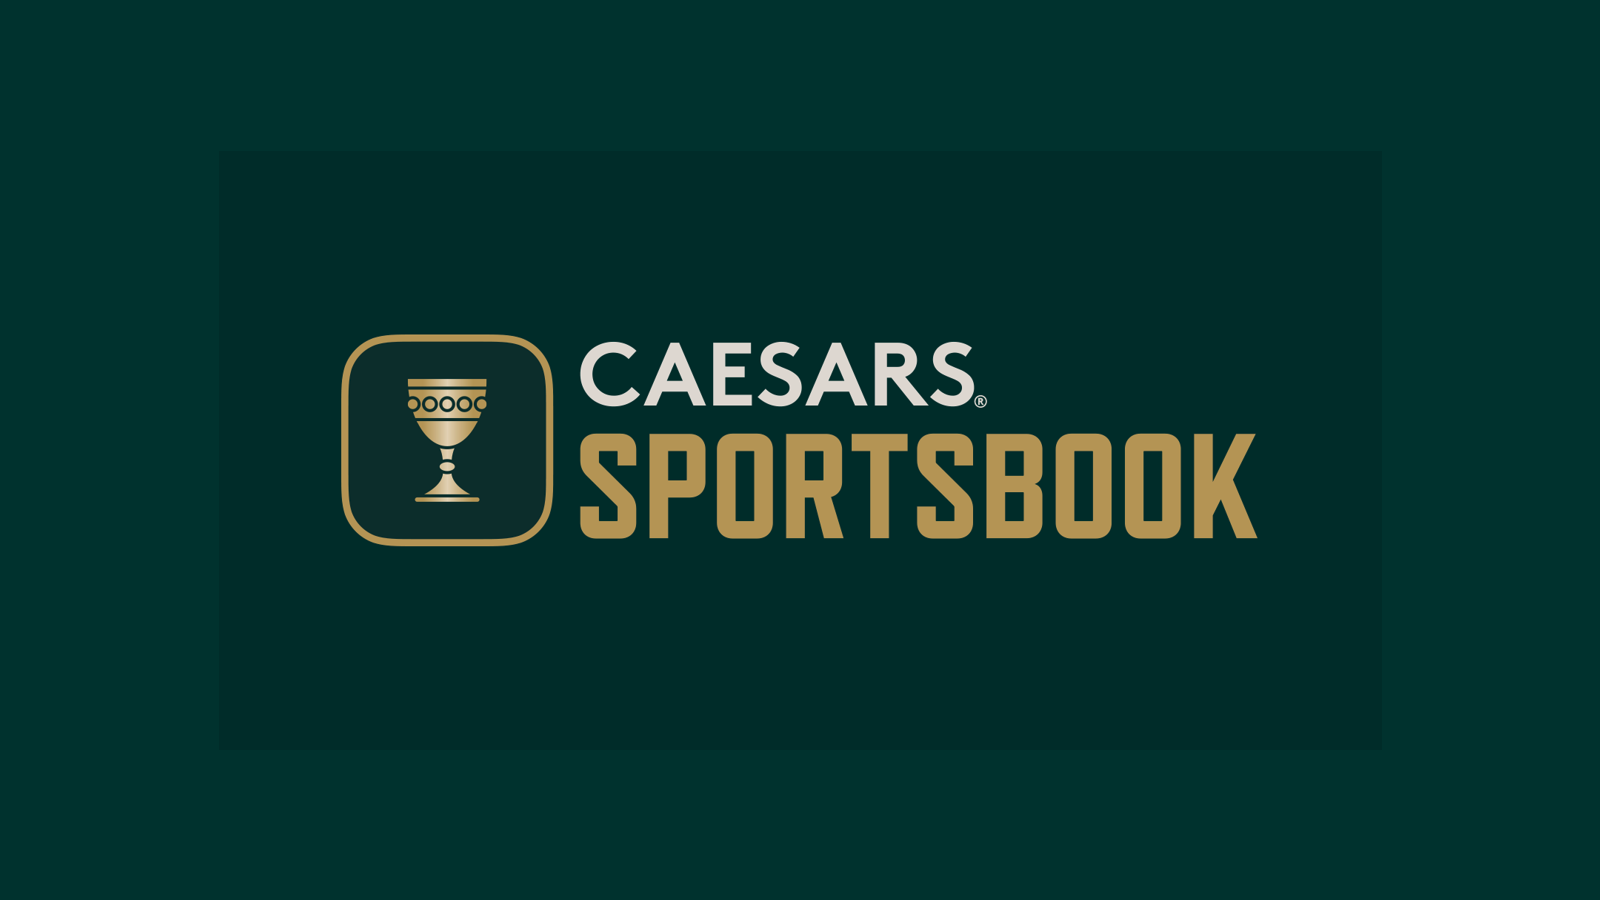 Ceasars sportsbook image